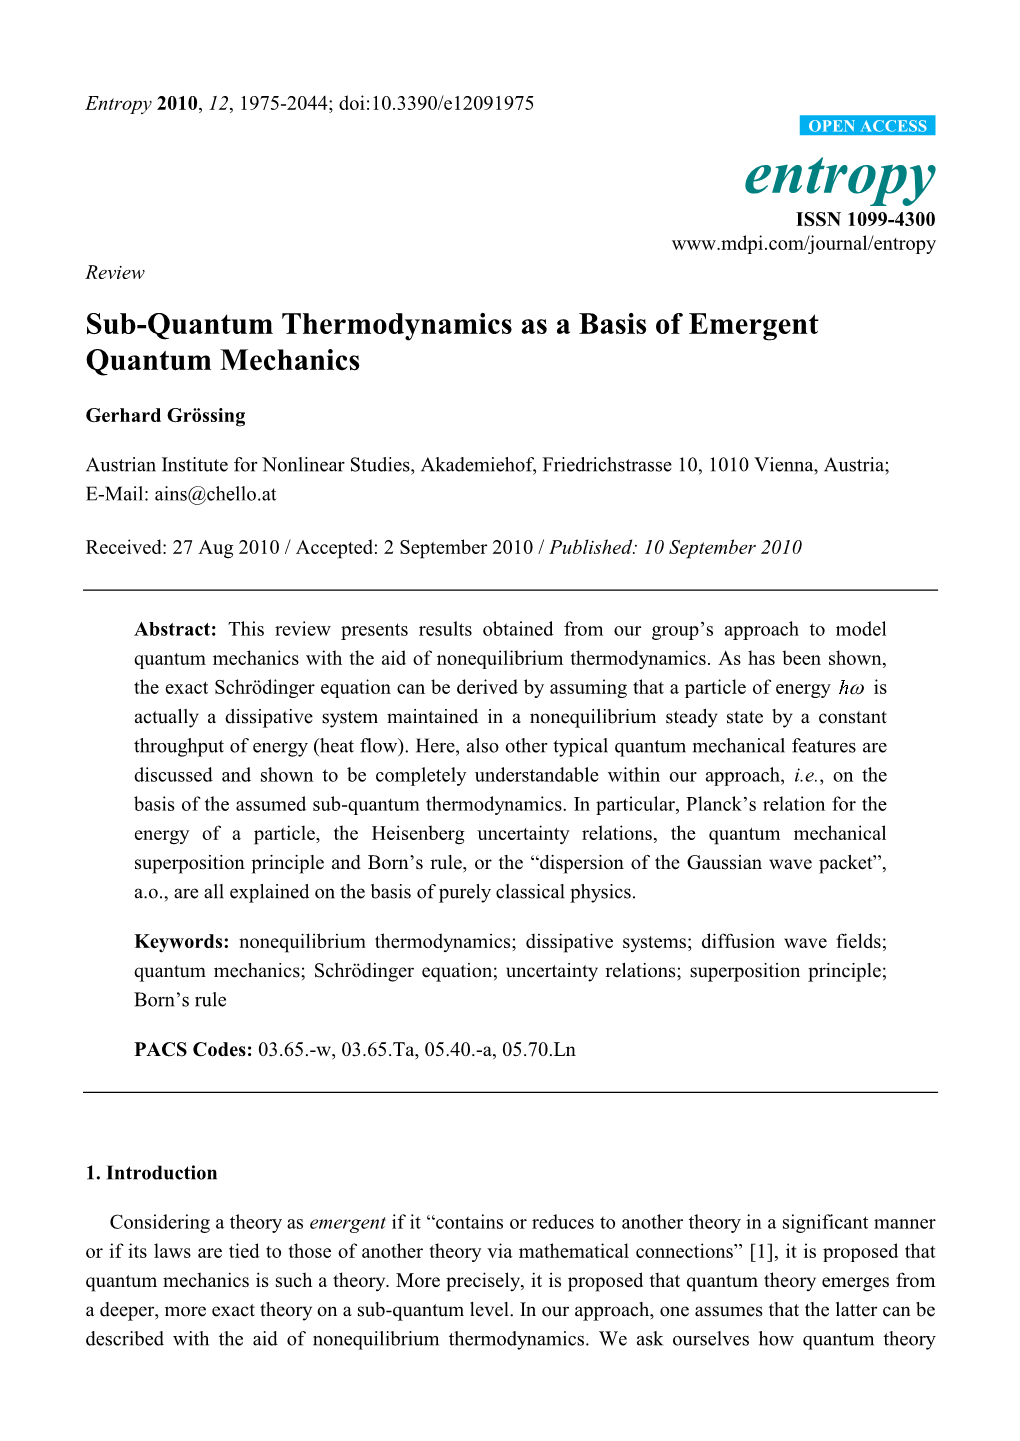 Sub-Quantum Thermodynamics As a Basis of Emergent Quantum Mechanics